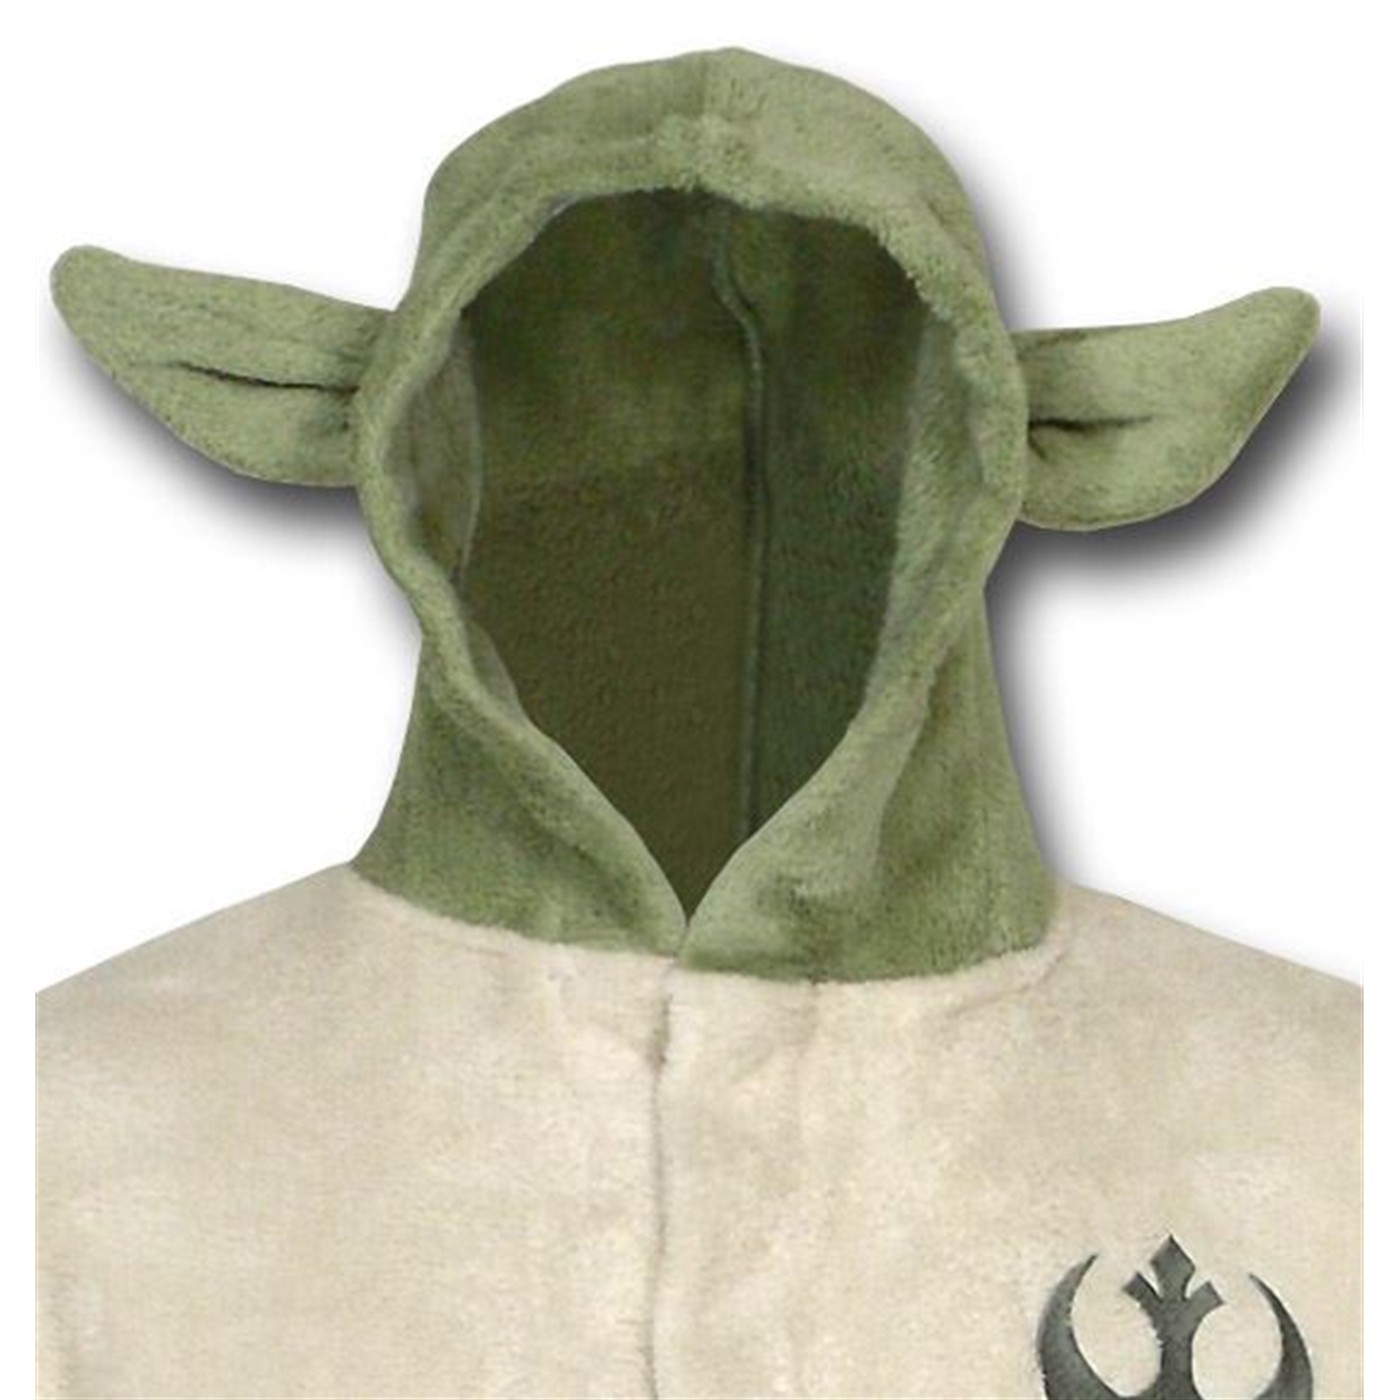 Star Wars Kids Yoda Fleece Hooded Robe